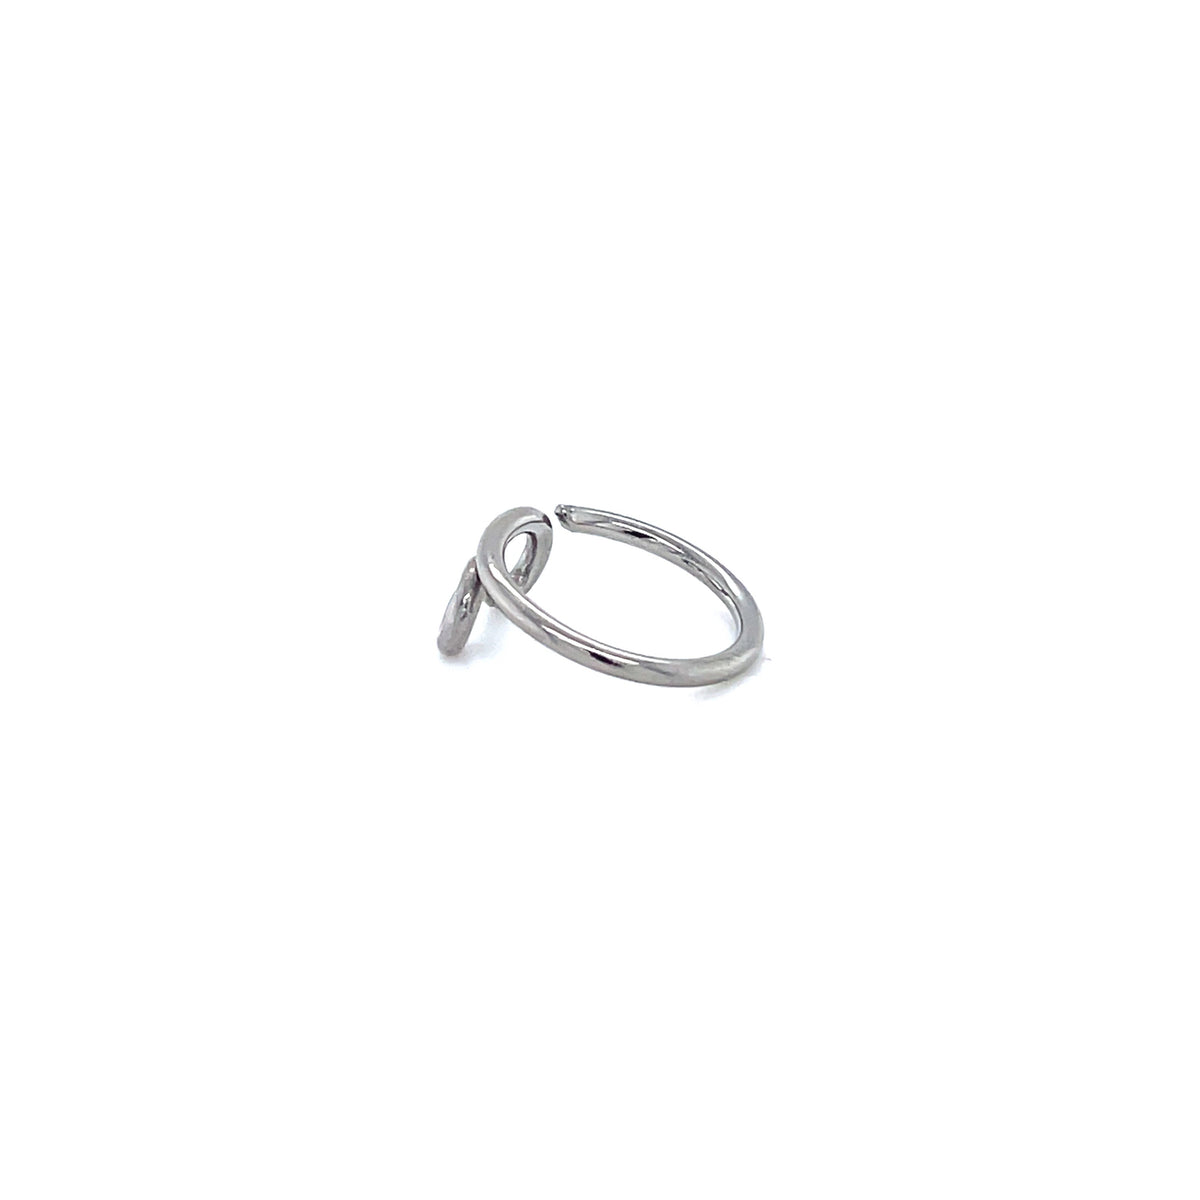 Apex Niobium Demeter Mini Seam Ring